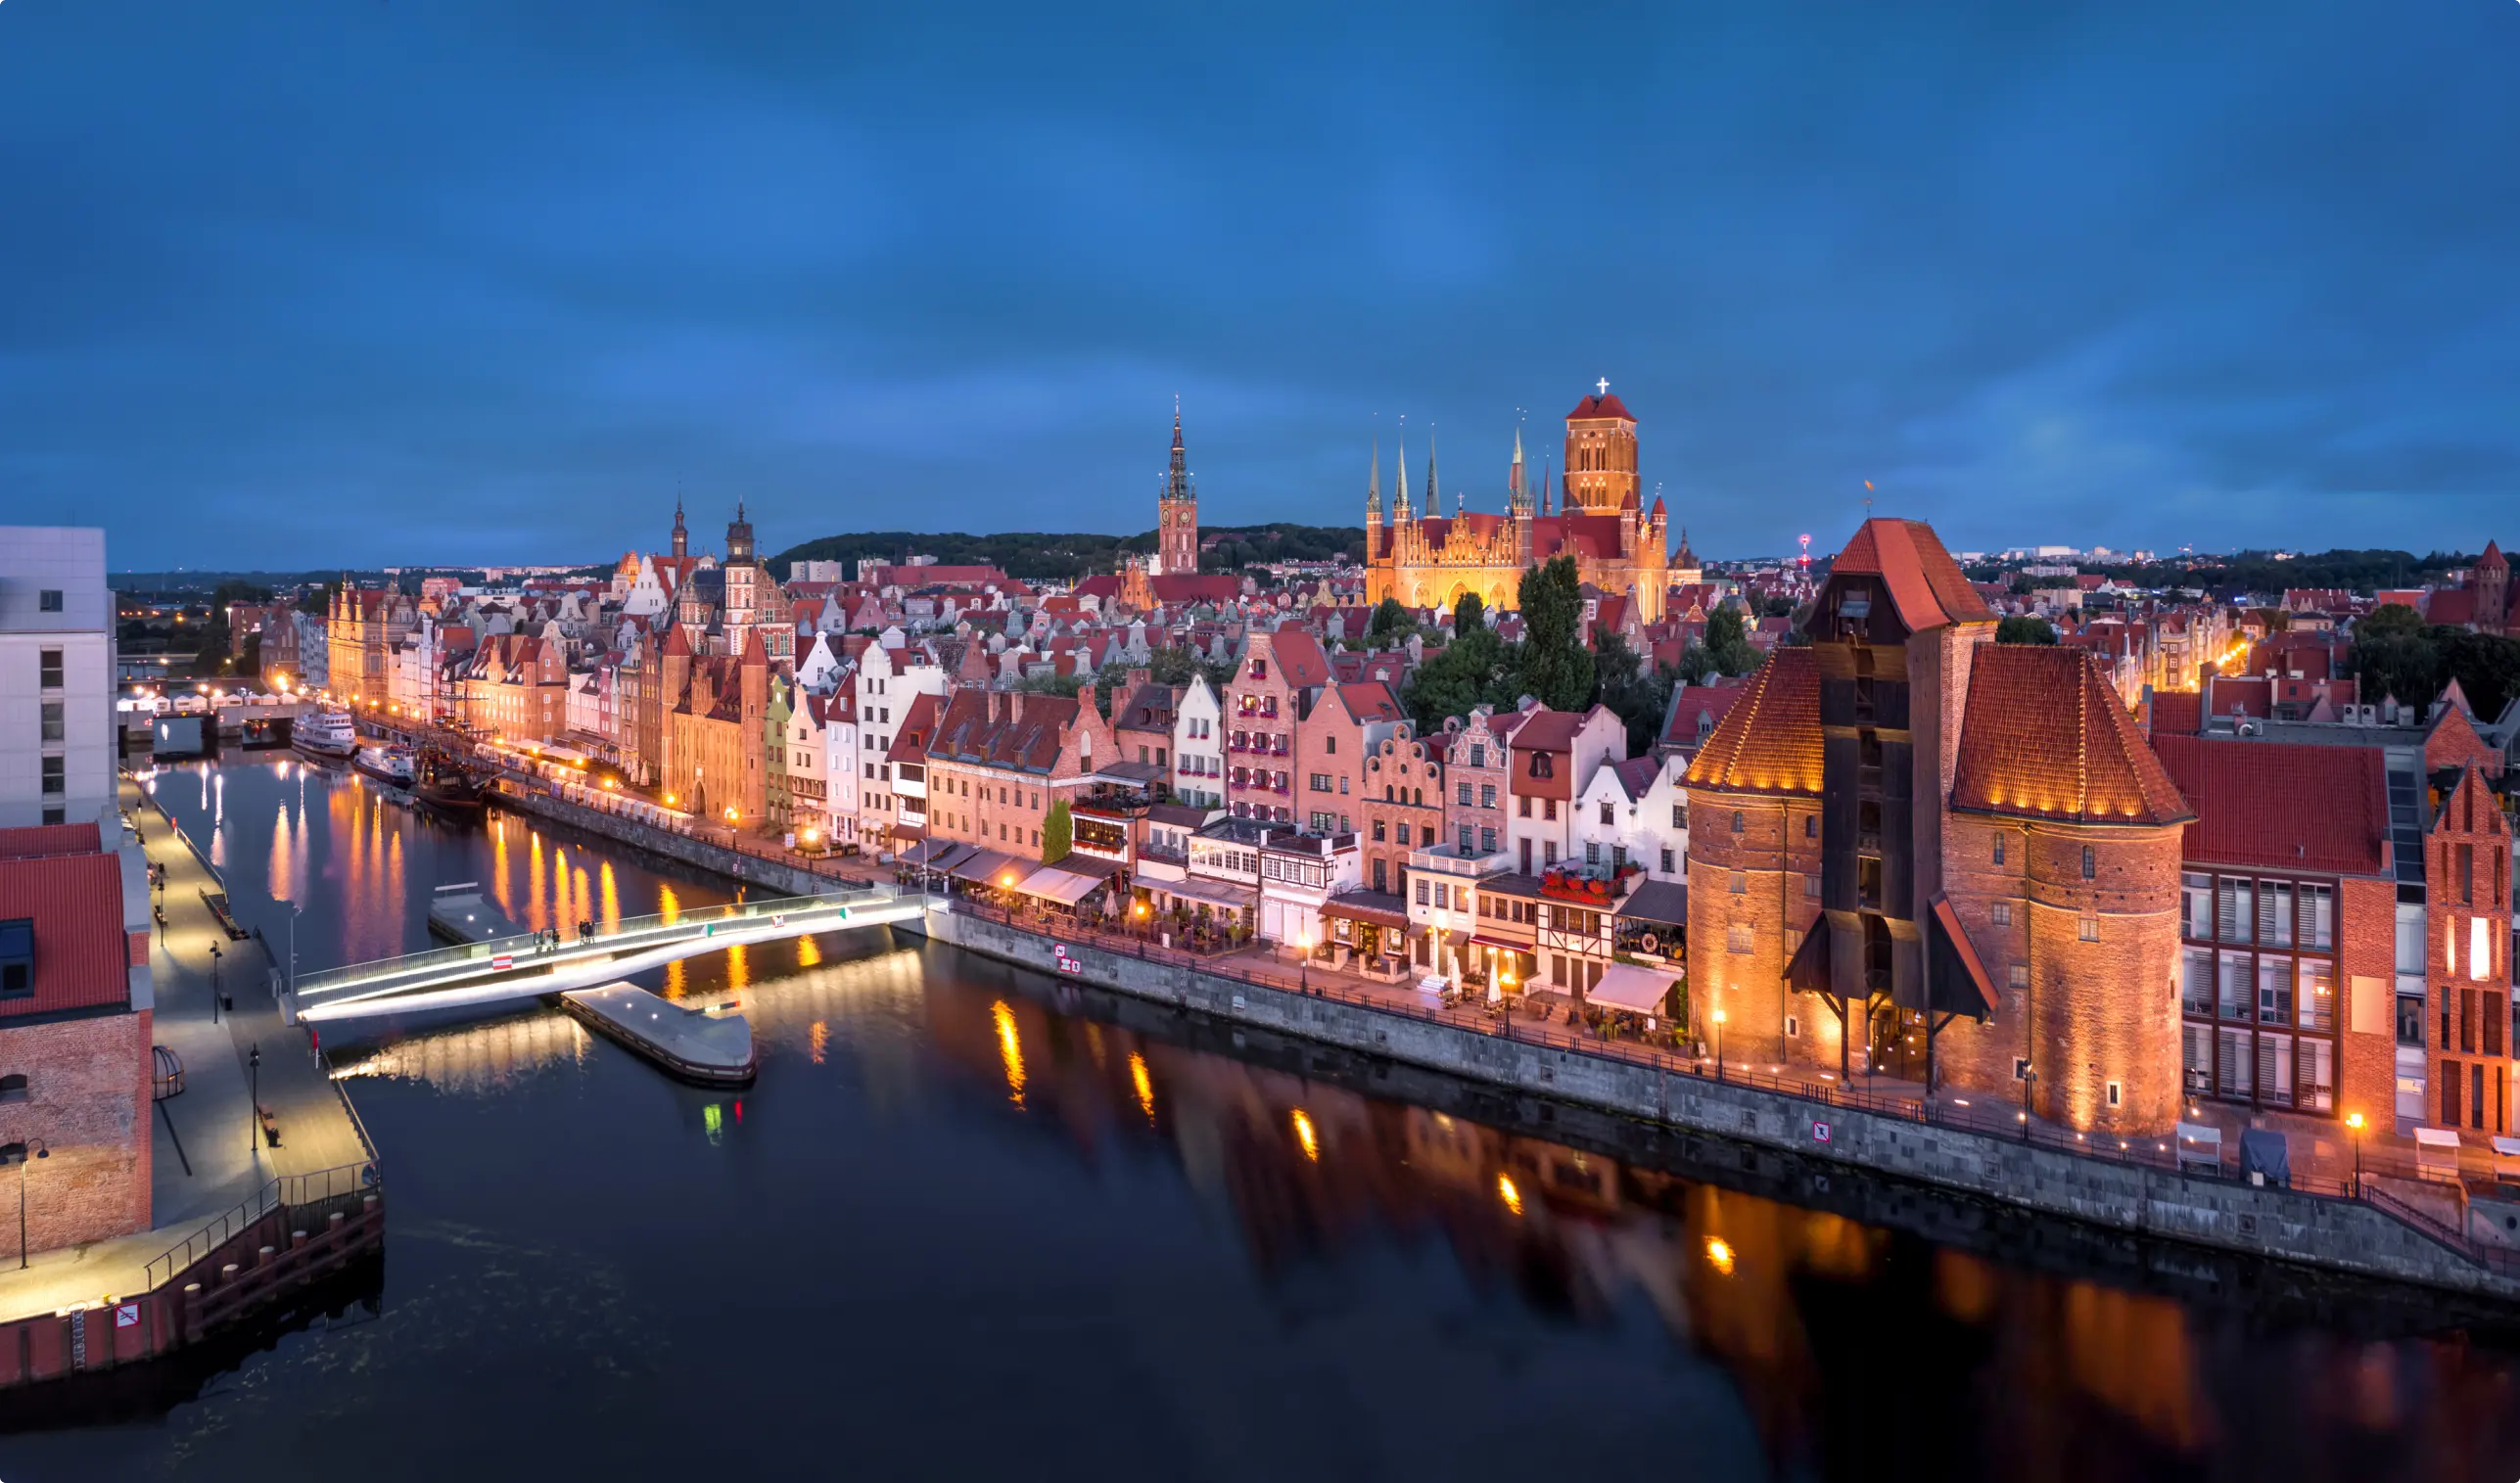 Wieczorna panorama Gdańska z widokiem na zabytkowe budynki, kamienice i most